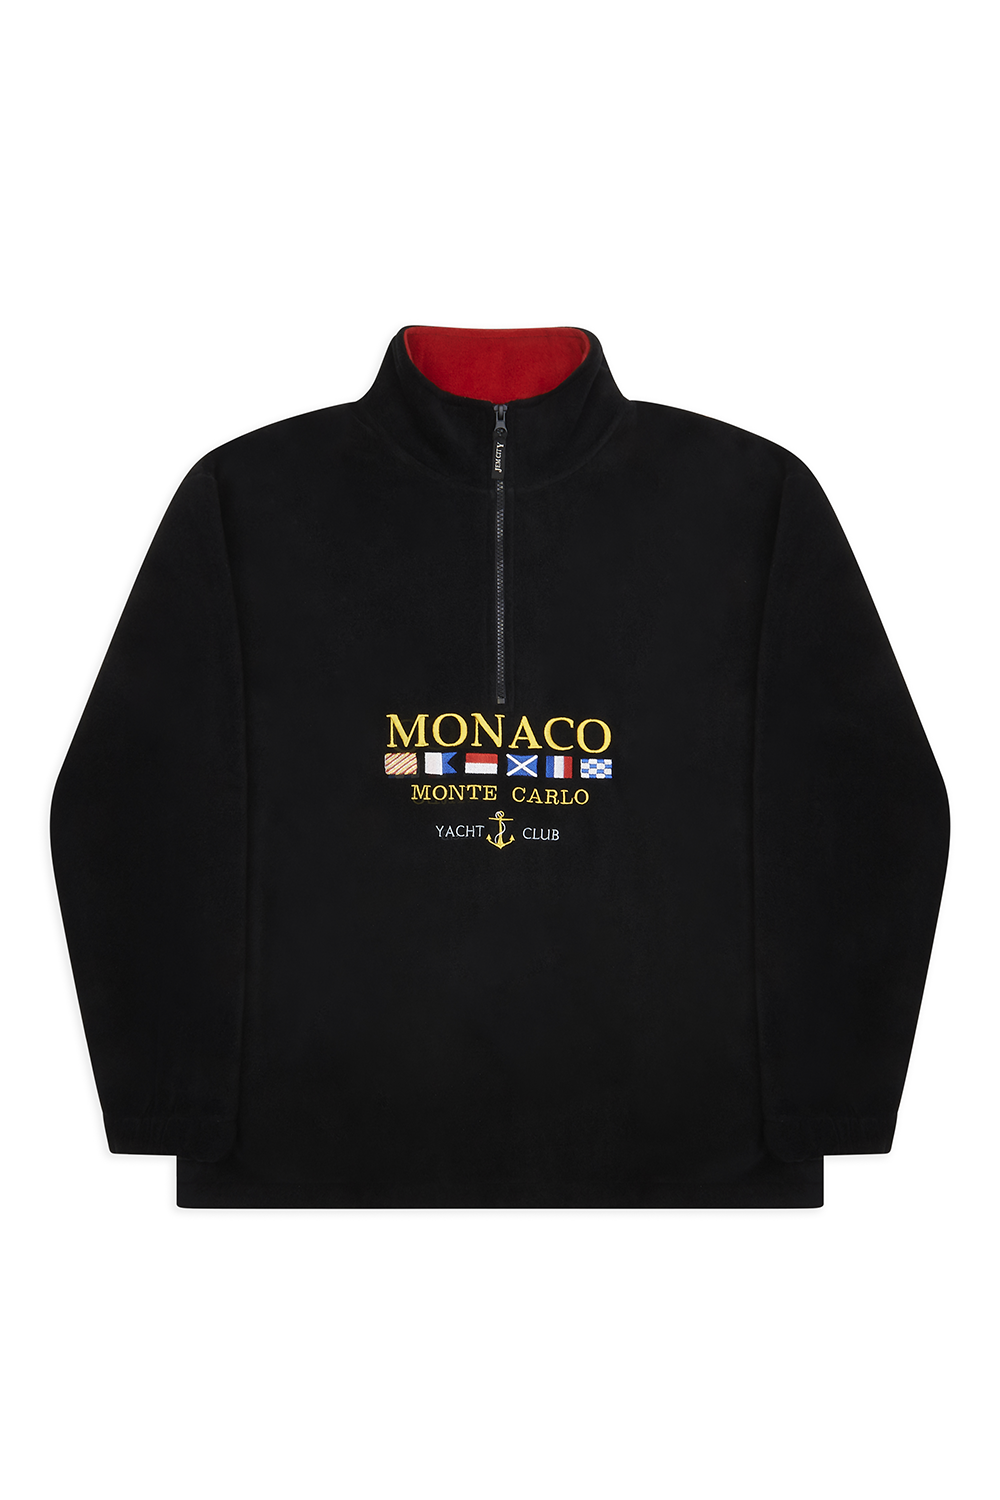 Monaco Vintage Fleece Black